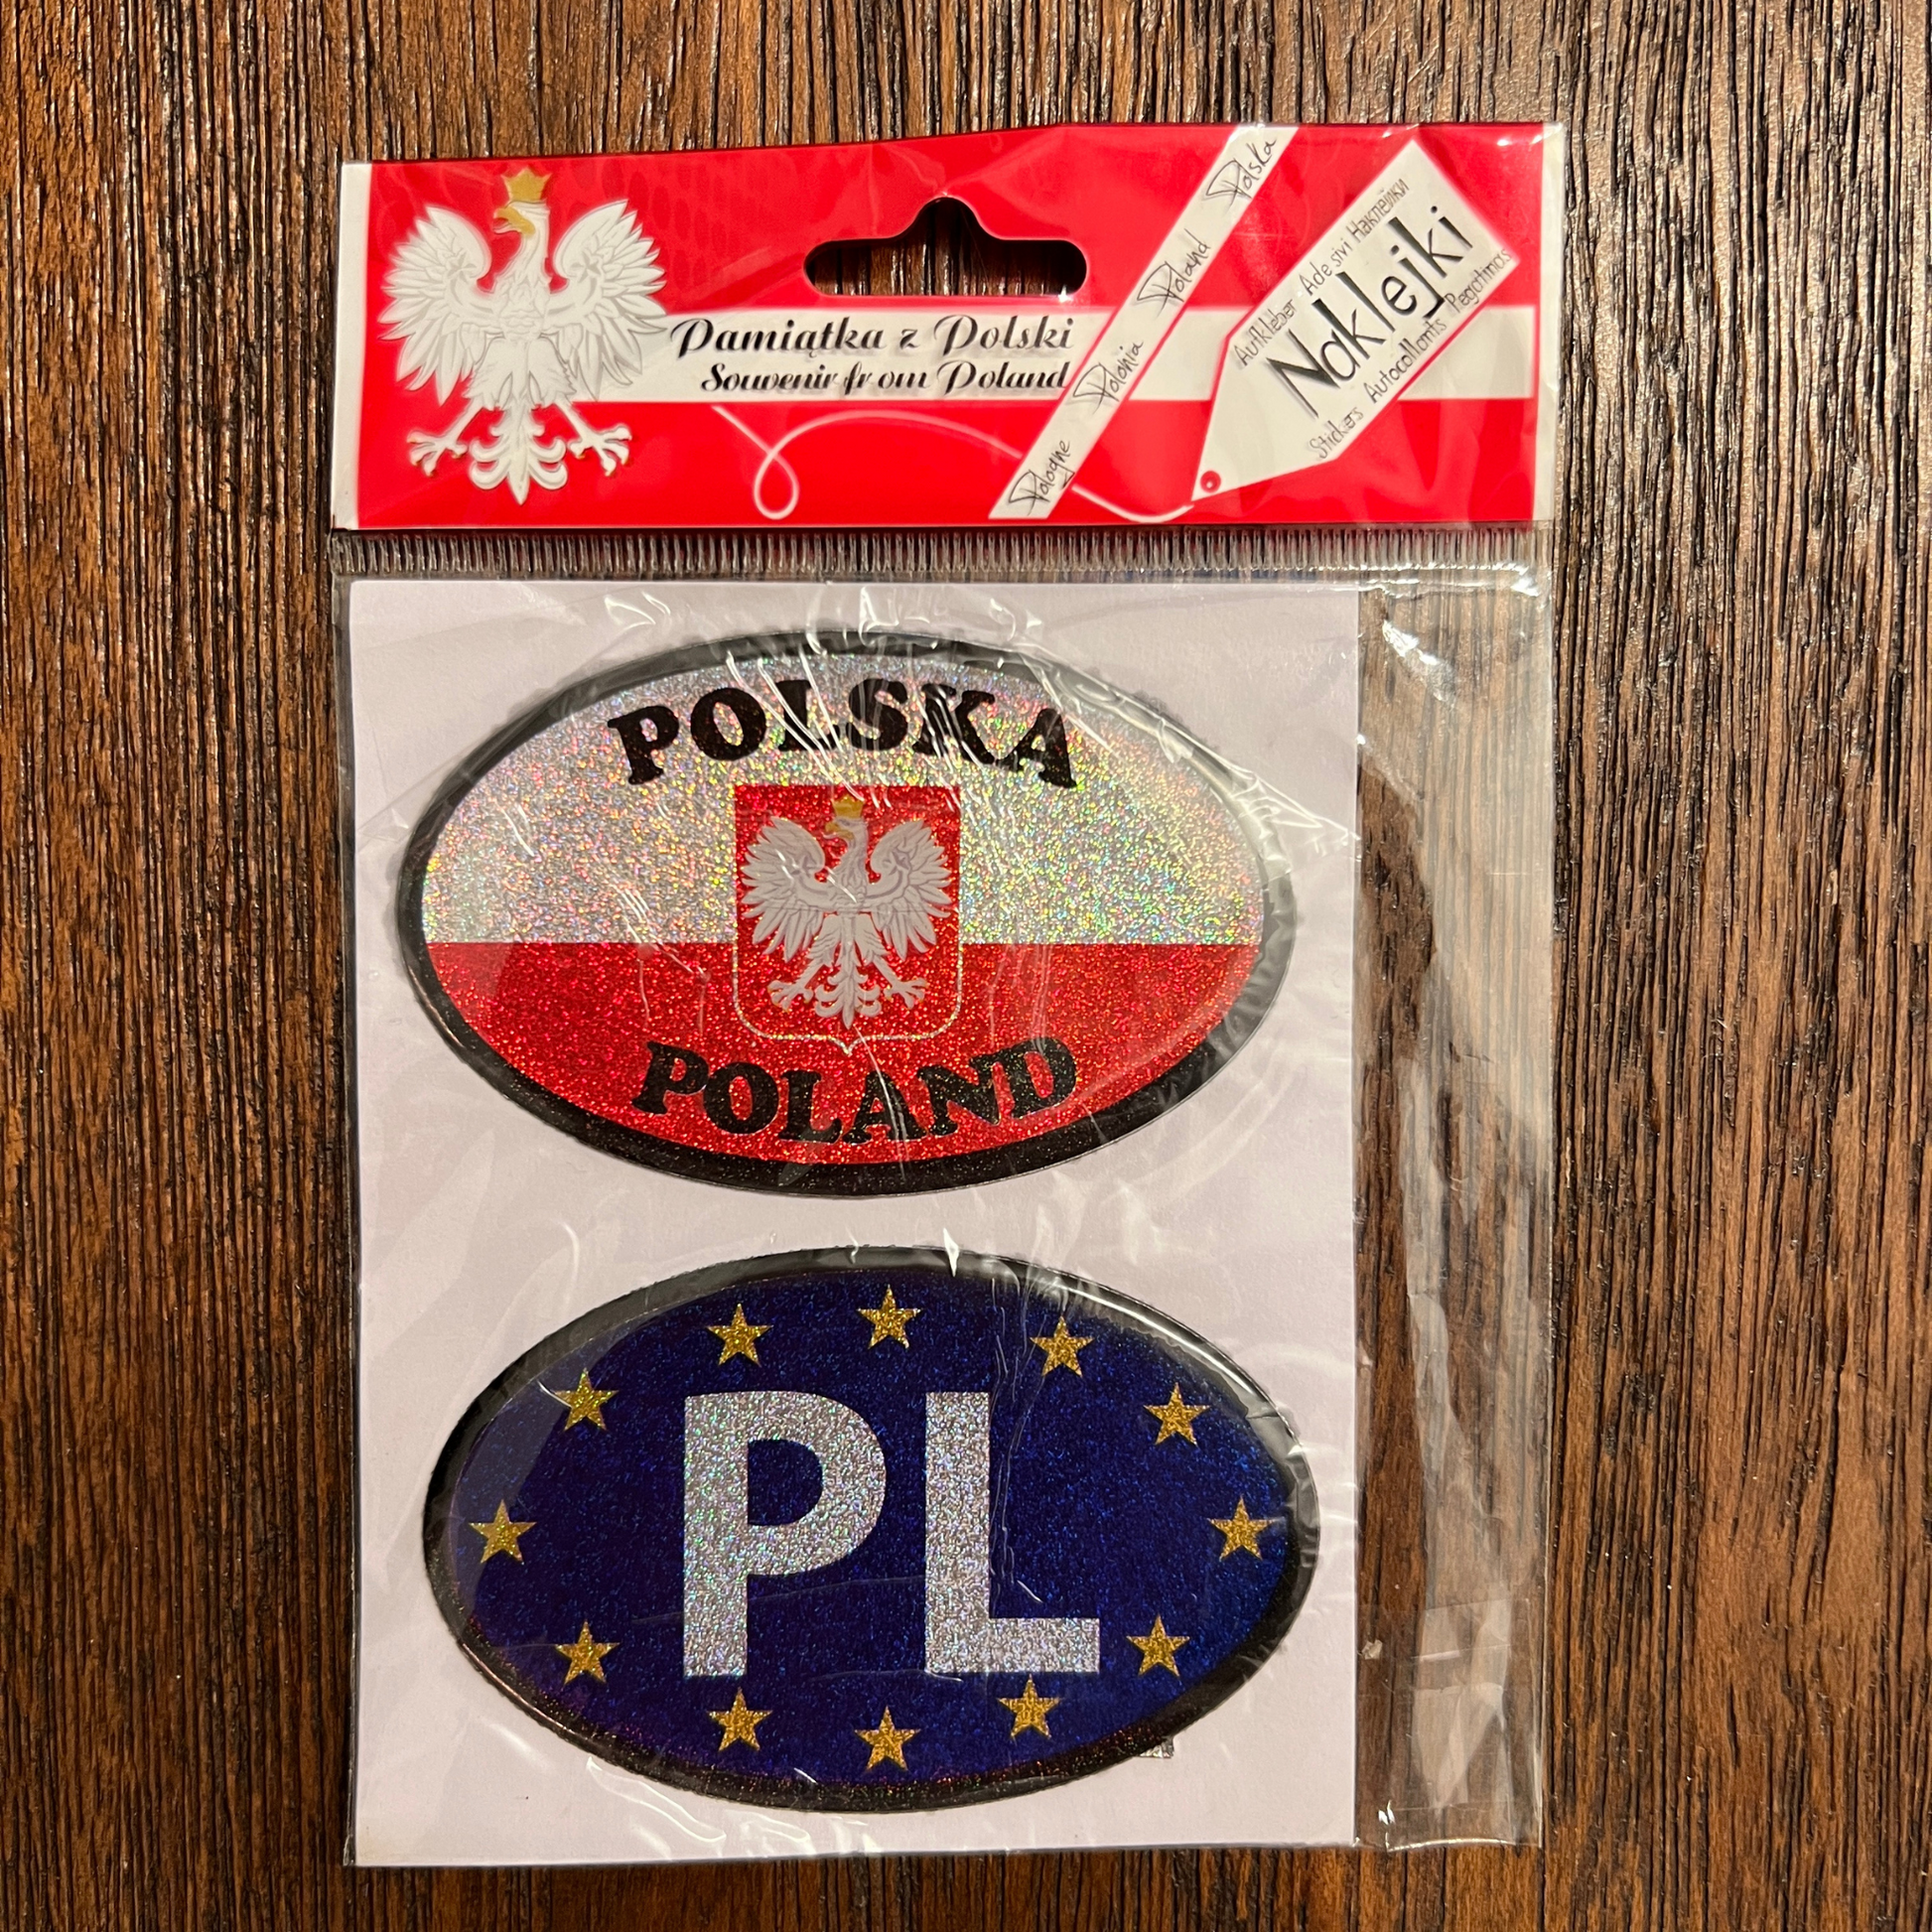 Sticker voiture Polska - Trésors de Pologne